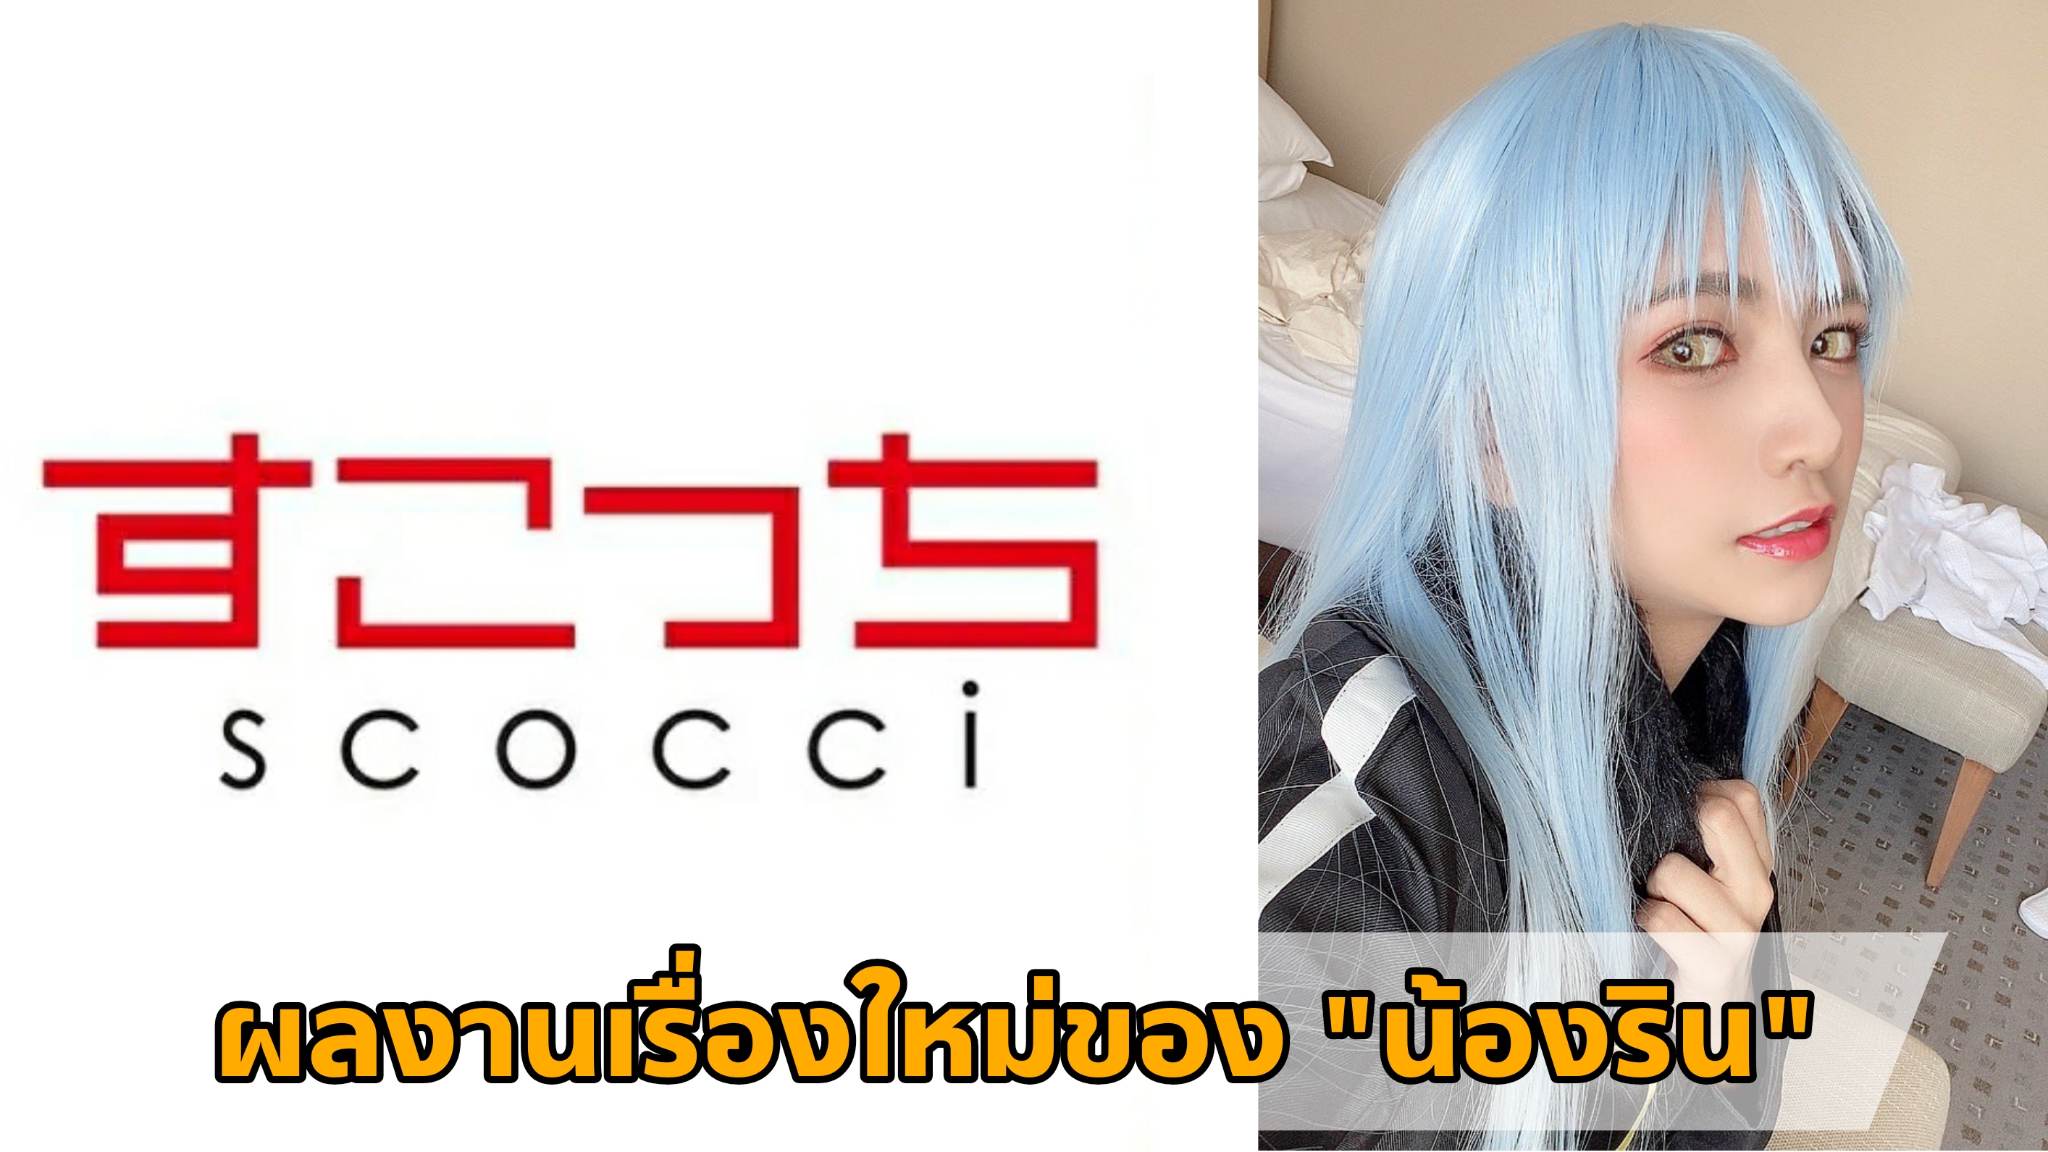 [SCOH-105] ผลงานเรื่องใหม่ของ "น้องริน" (Rin Miyazaki) Cosplay เป็น "ท่านริมุรุ" 10